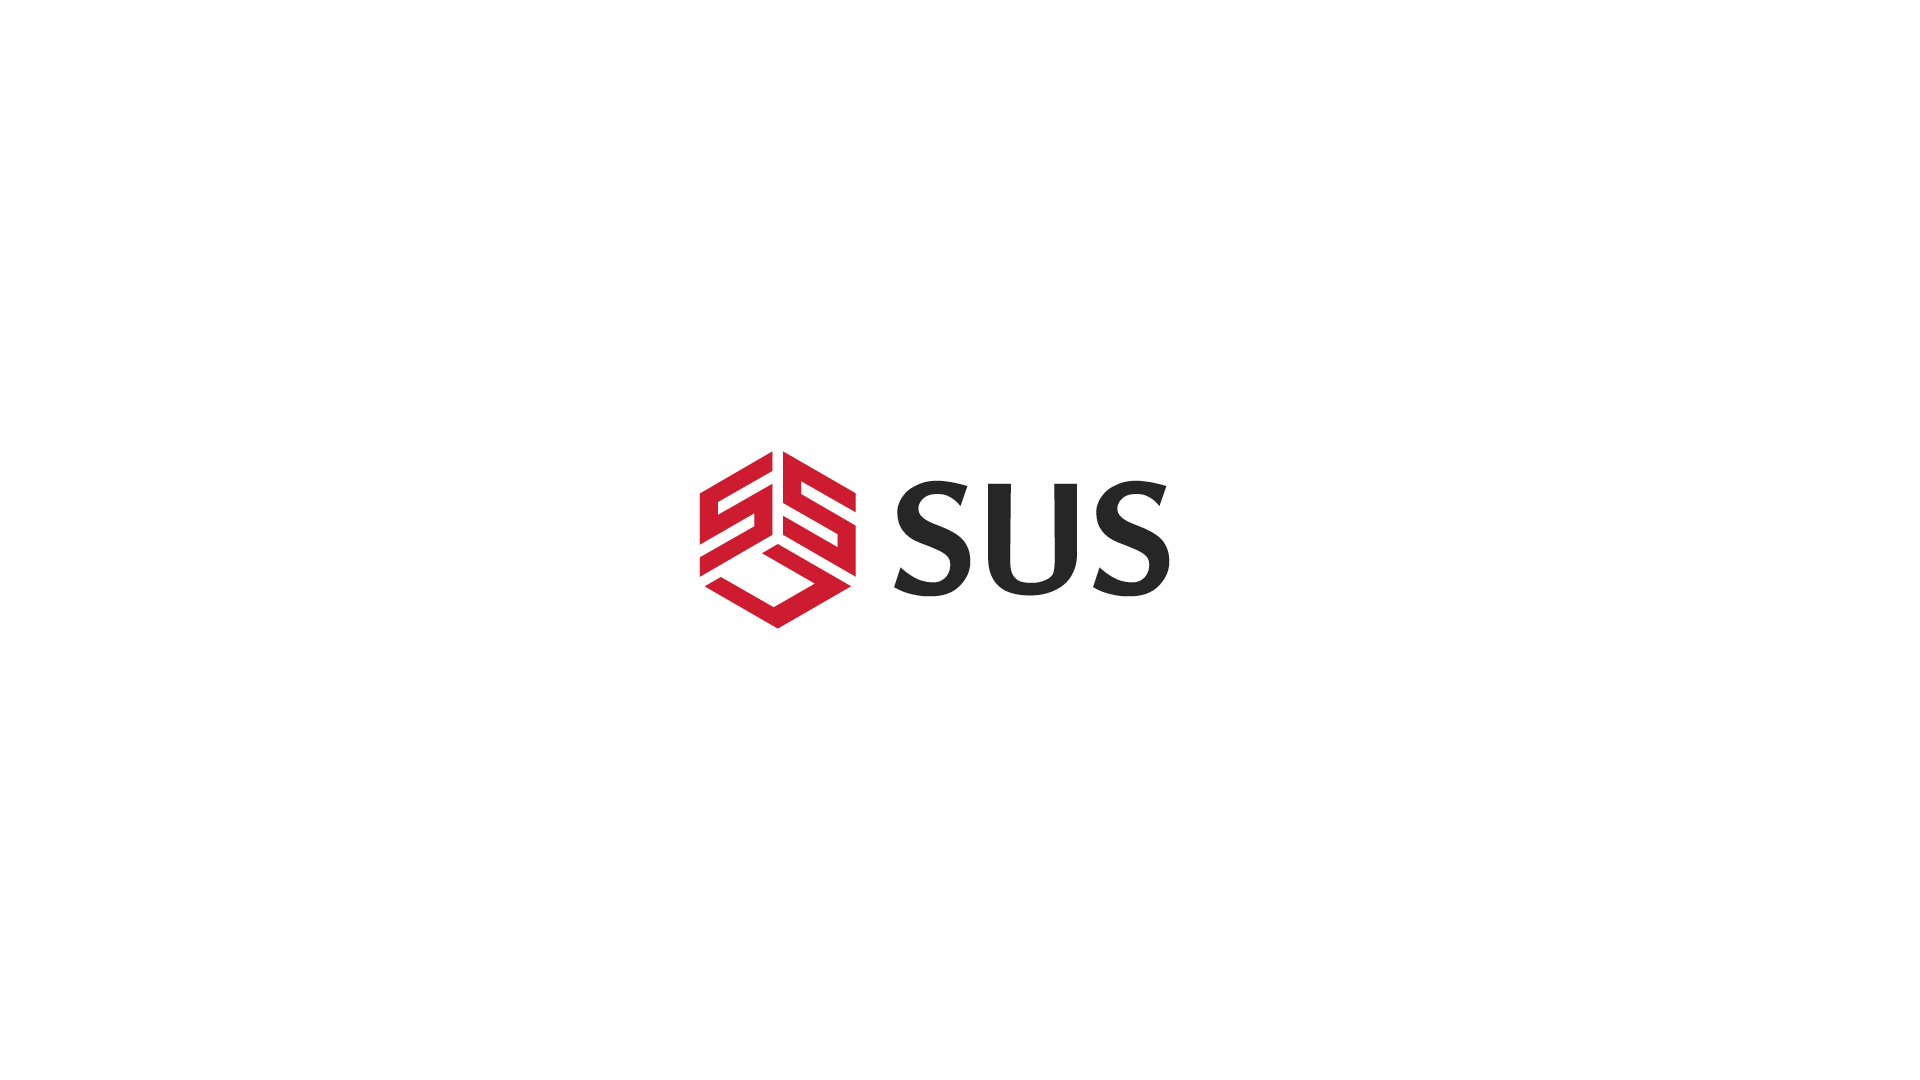 SUS's Symbol Logotype